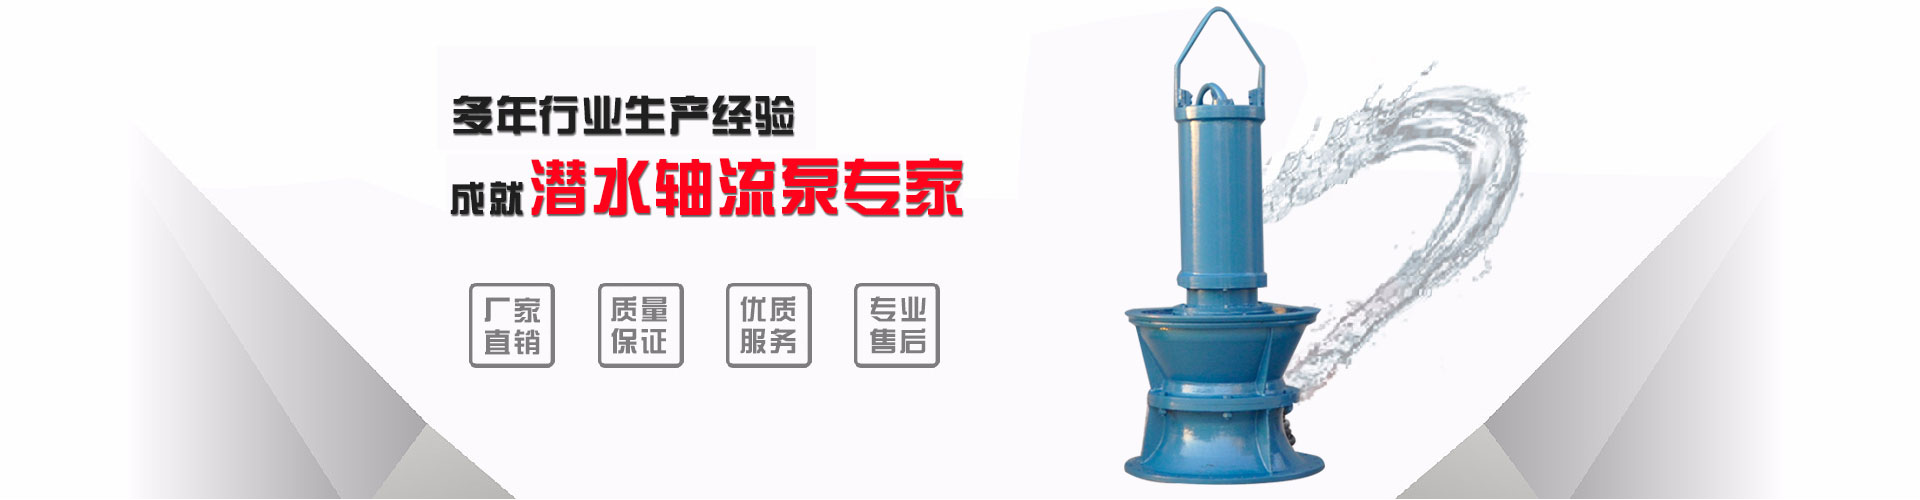 贵州700QZ-100井筒式潜水轴流泵